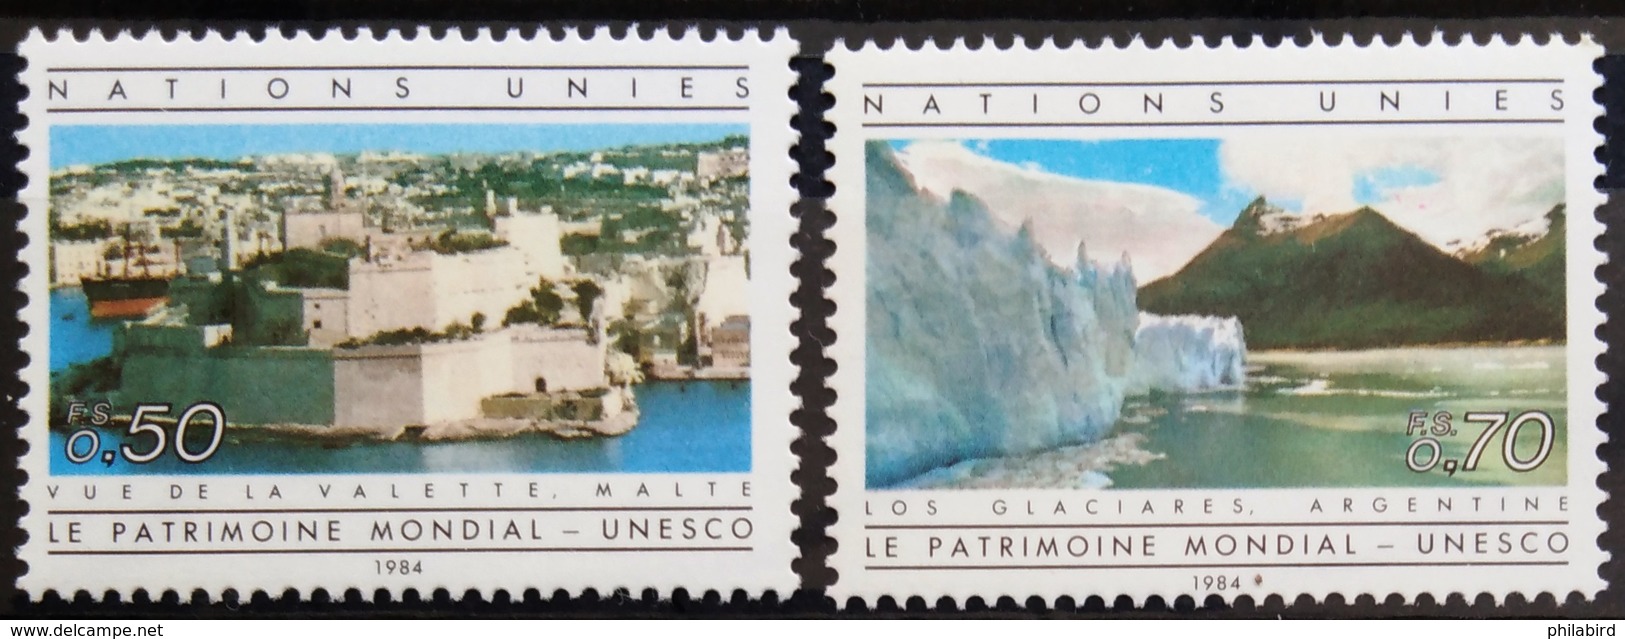 NATIONS-UNIS  GENEVE                  N° 122/123                      NEUF** - Unused Stamps